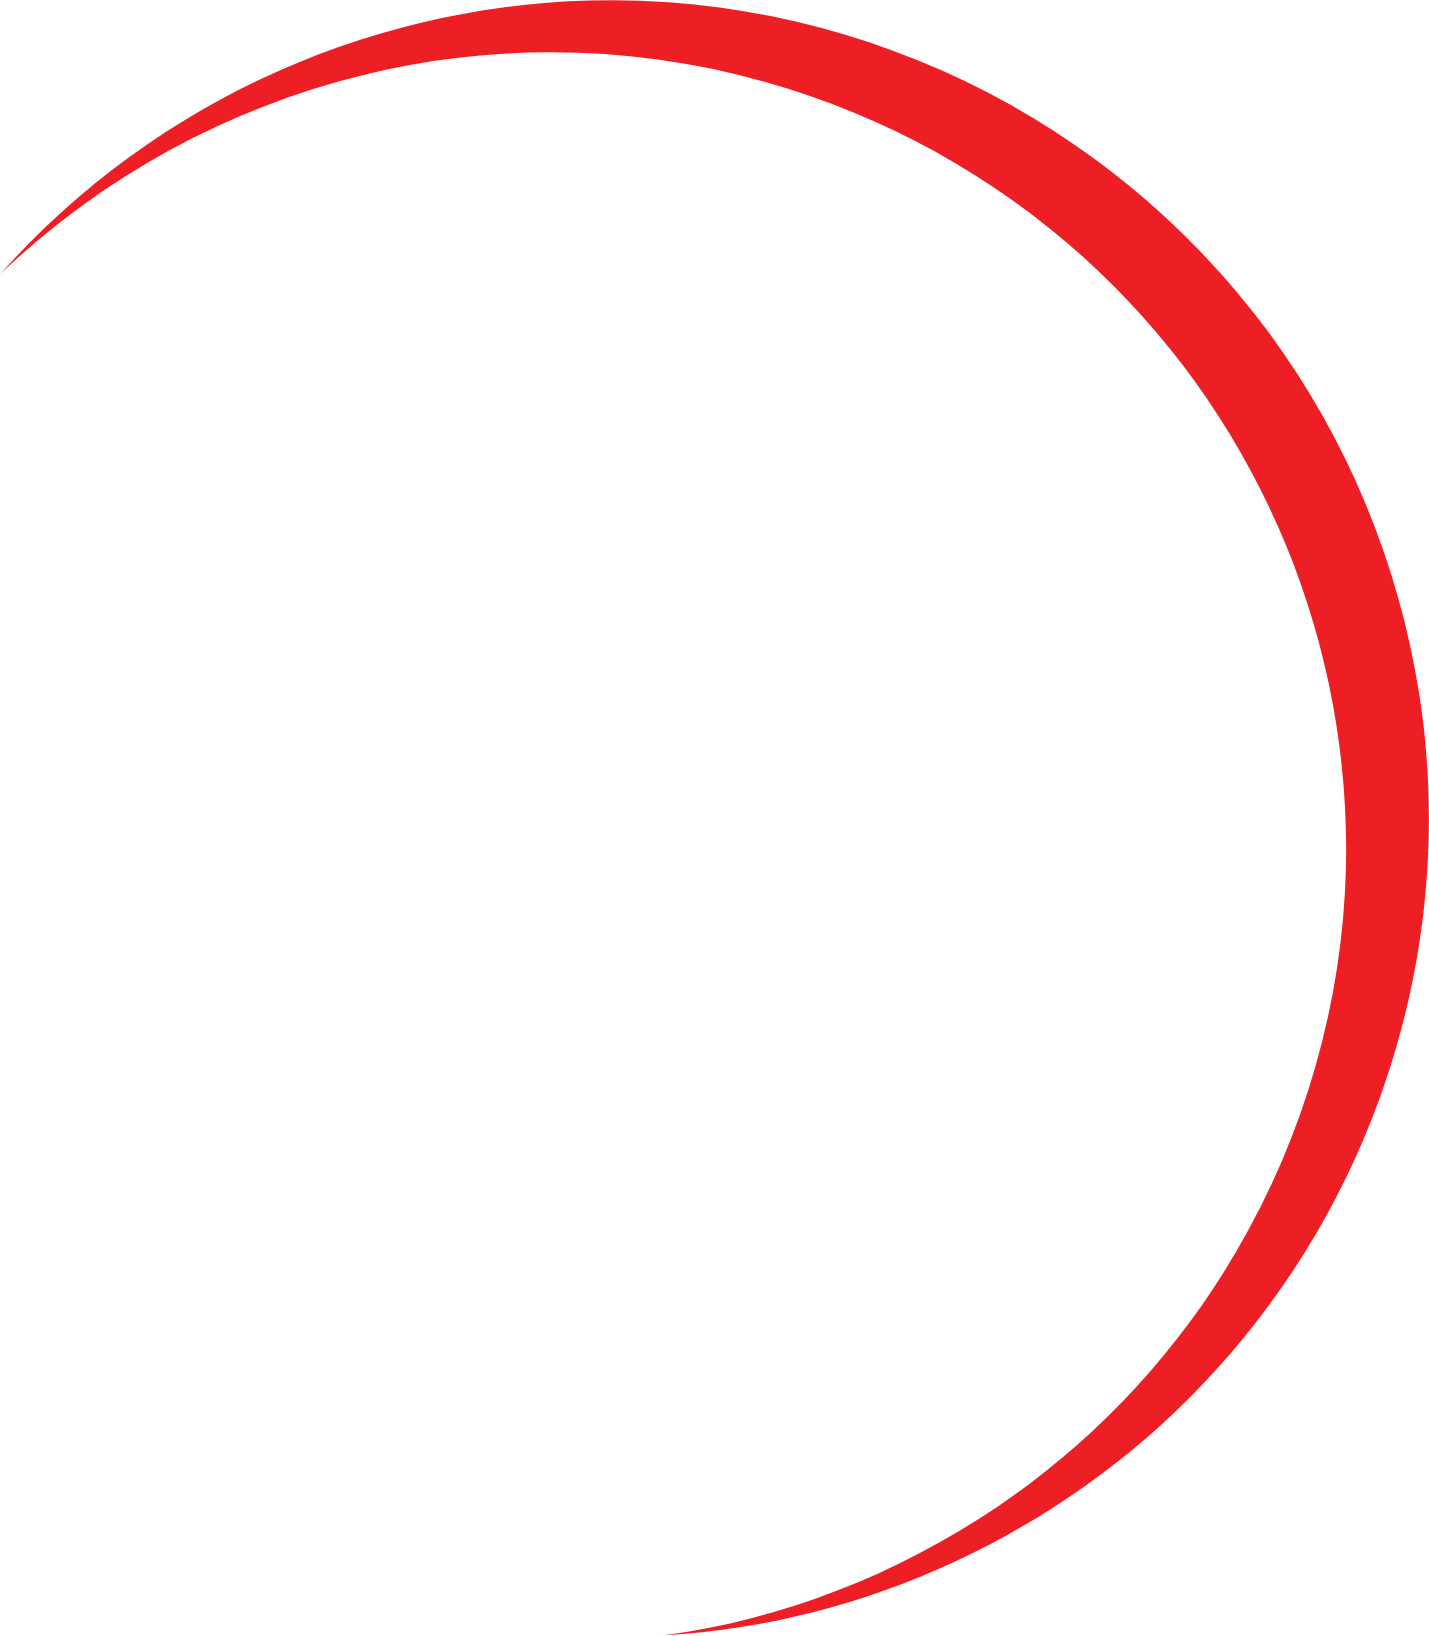 Planet13 logo for dark backgrounds (transparent PNG)